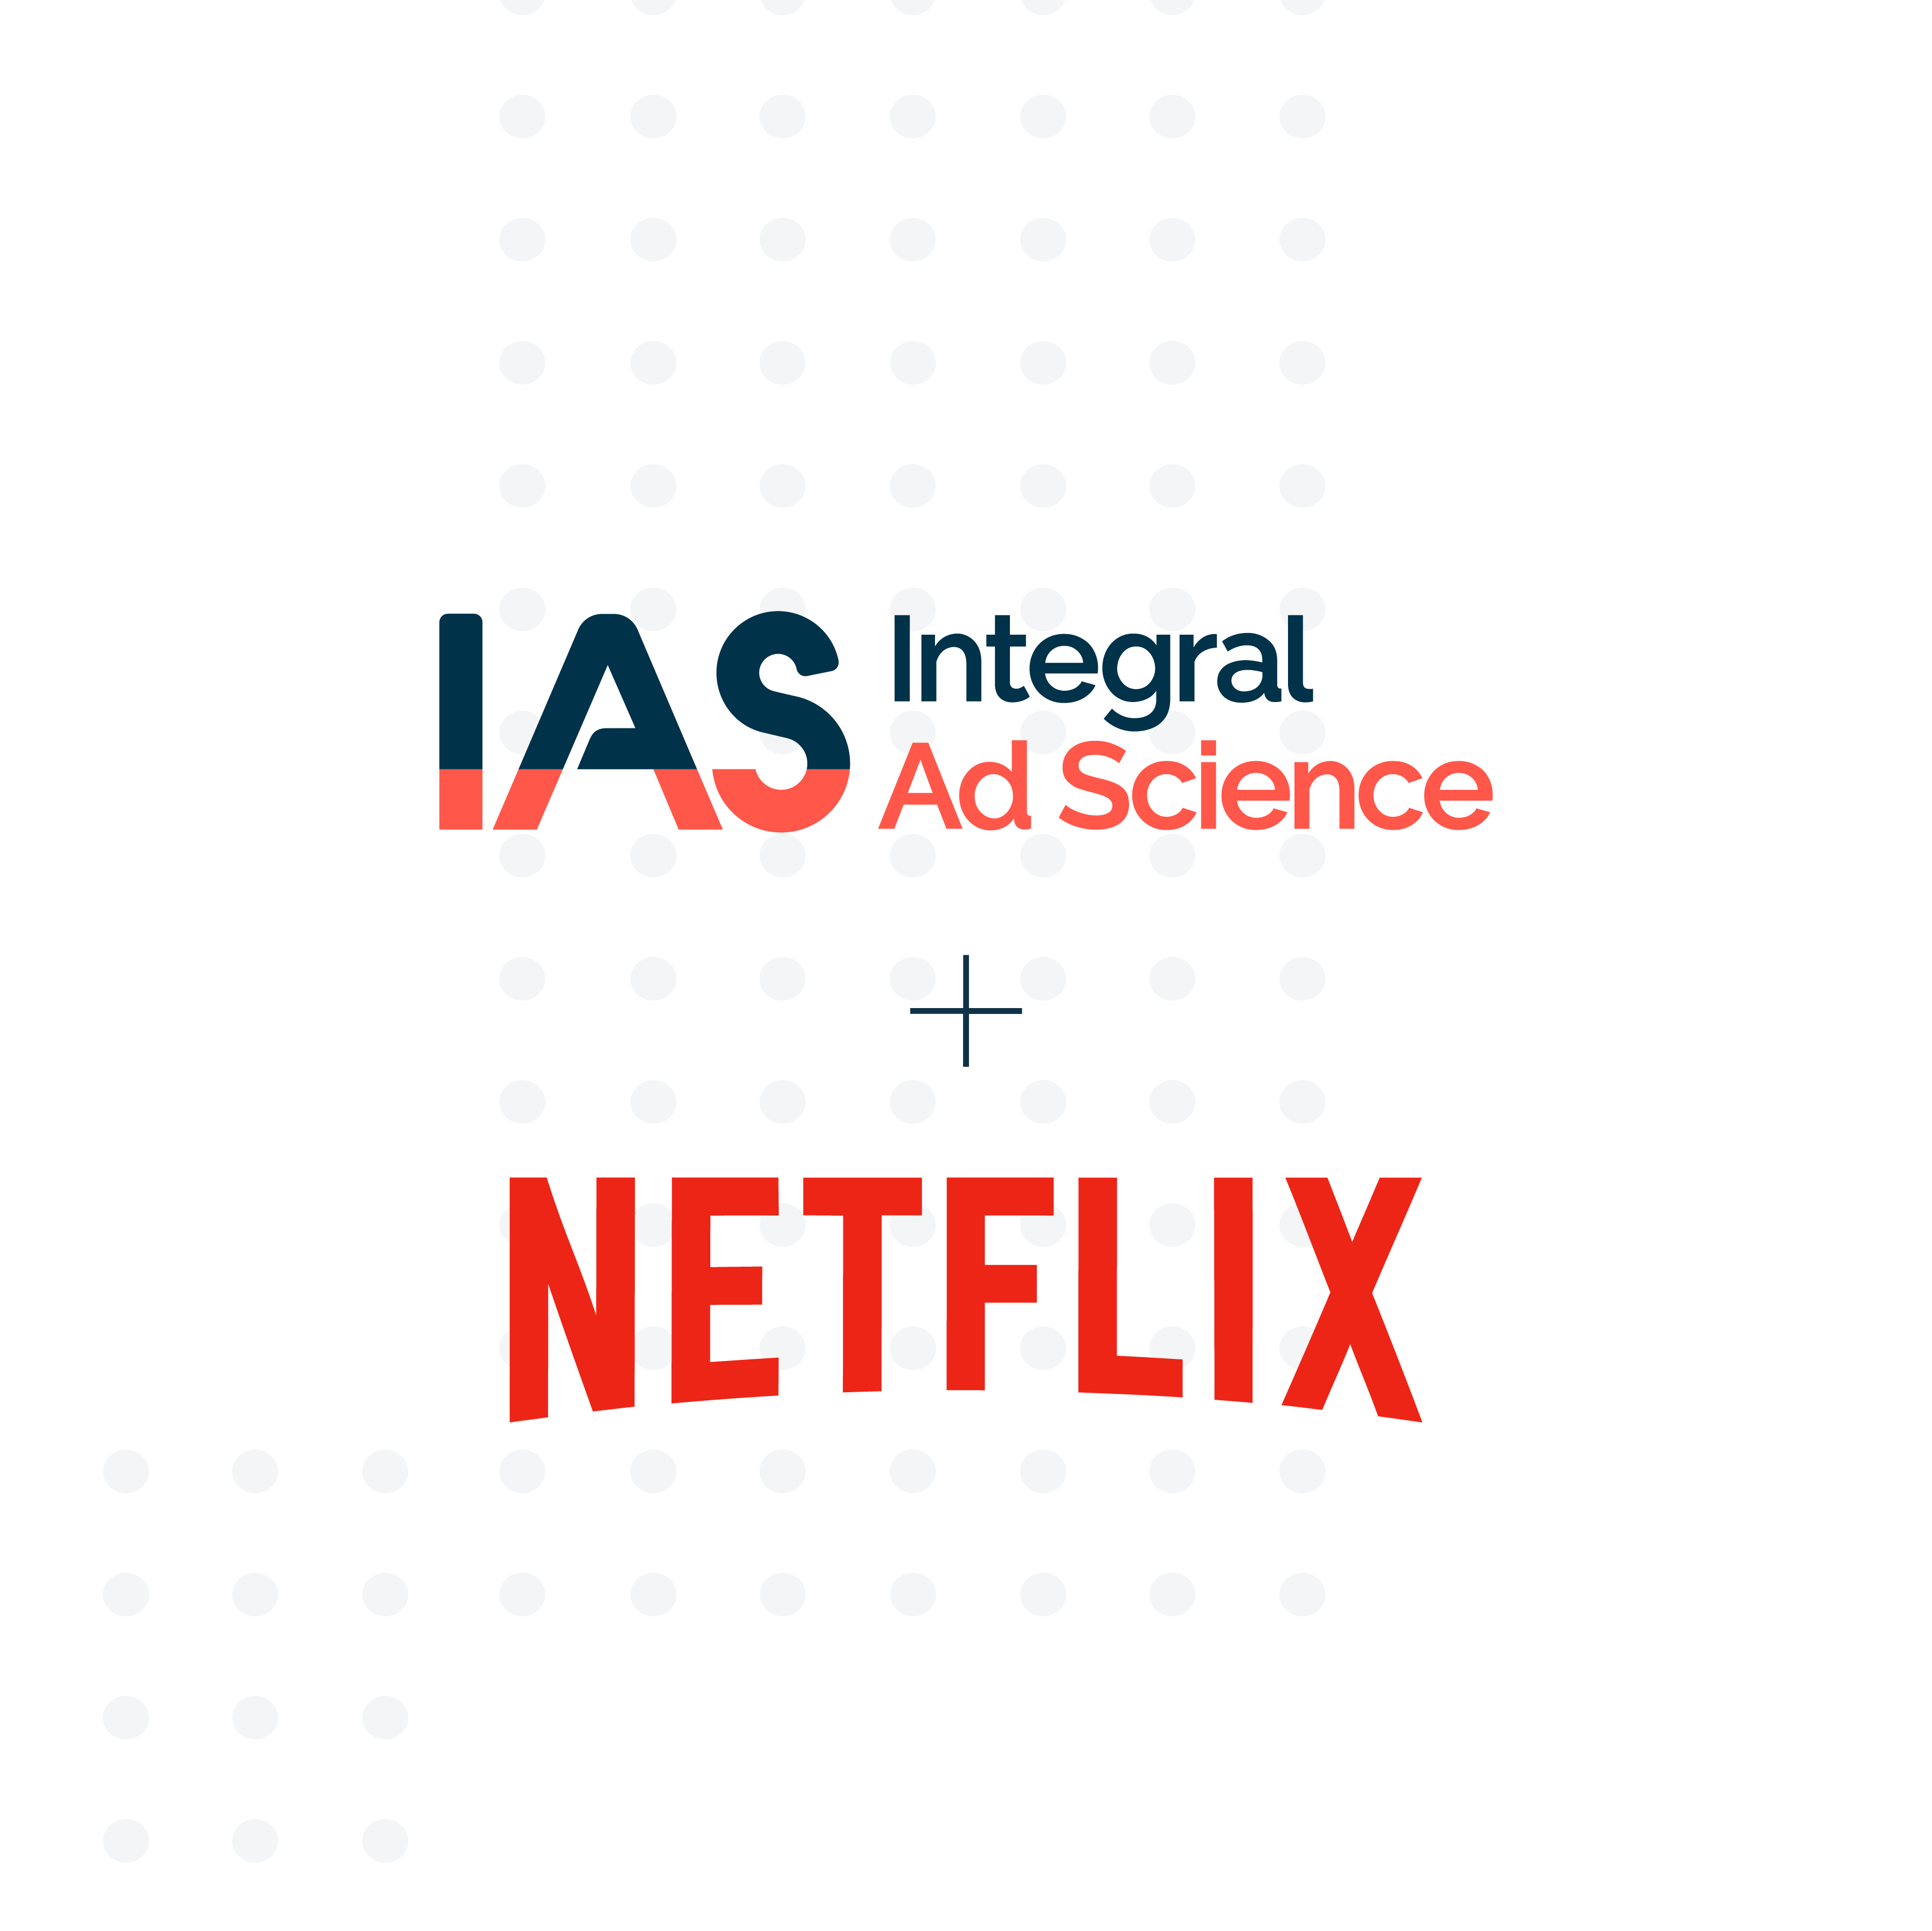 IAS unterstützt Netflix als Partner für Transparenz und Mediaqualität